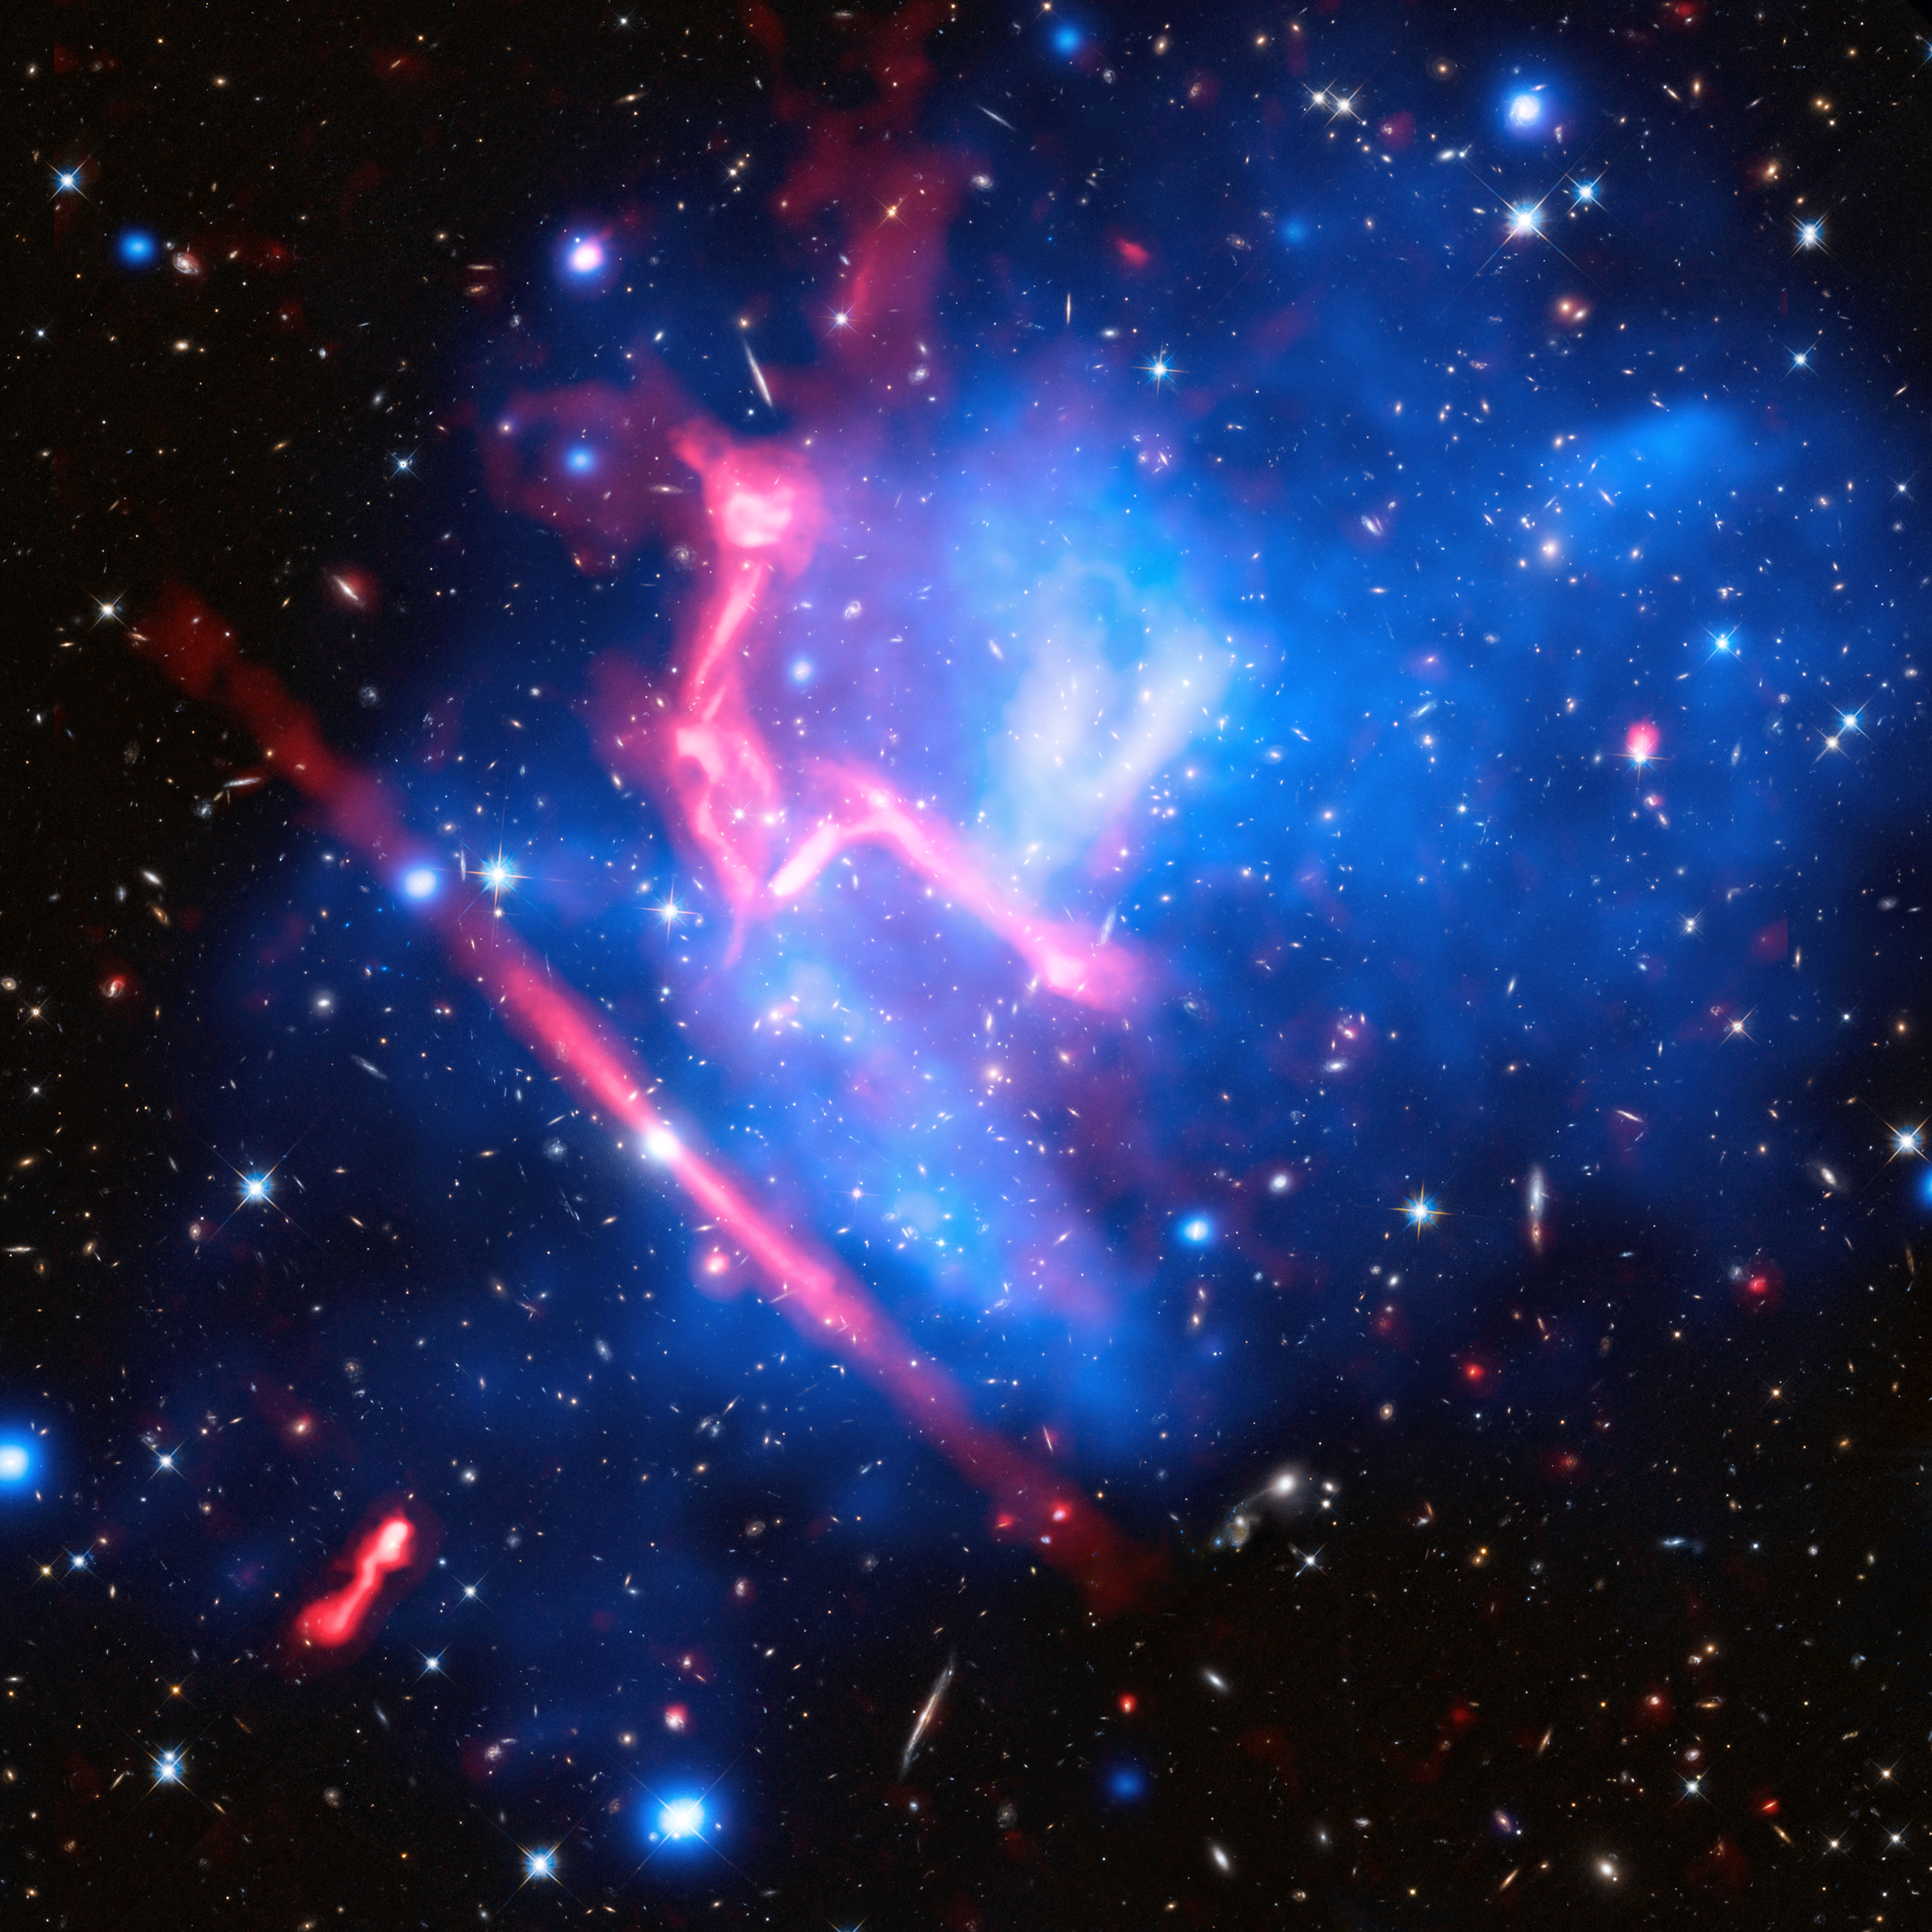 Frontier Fields galaxy cluster MACS J0717